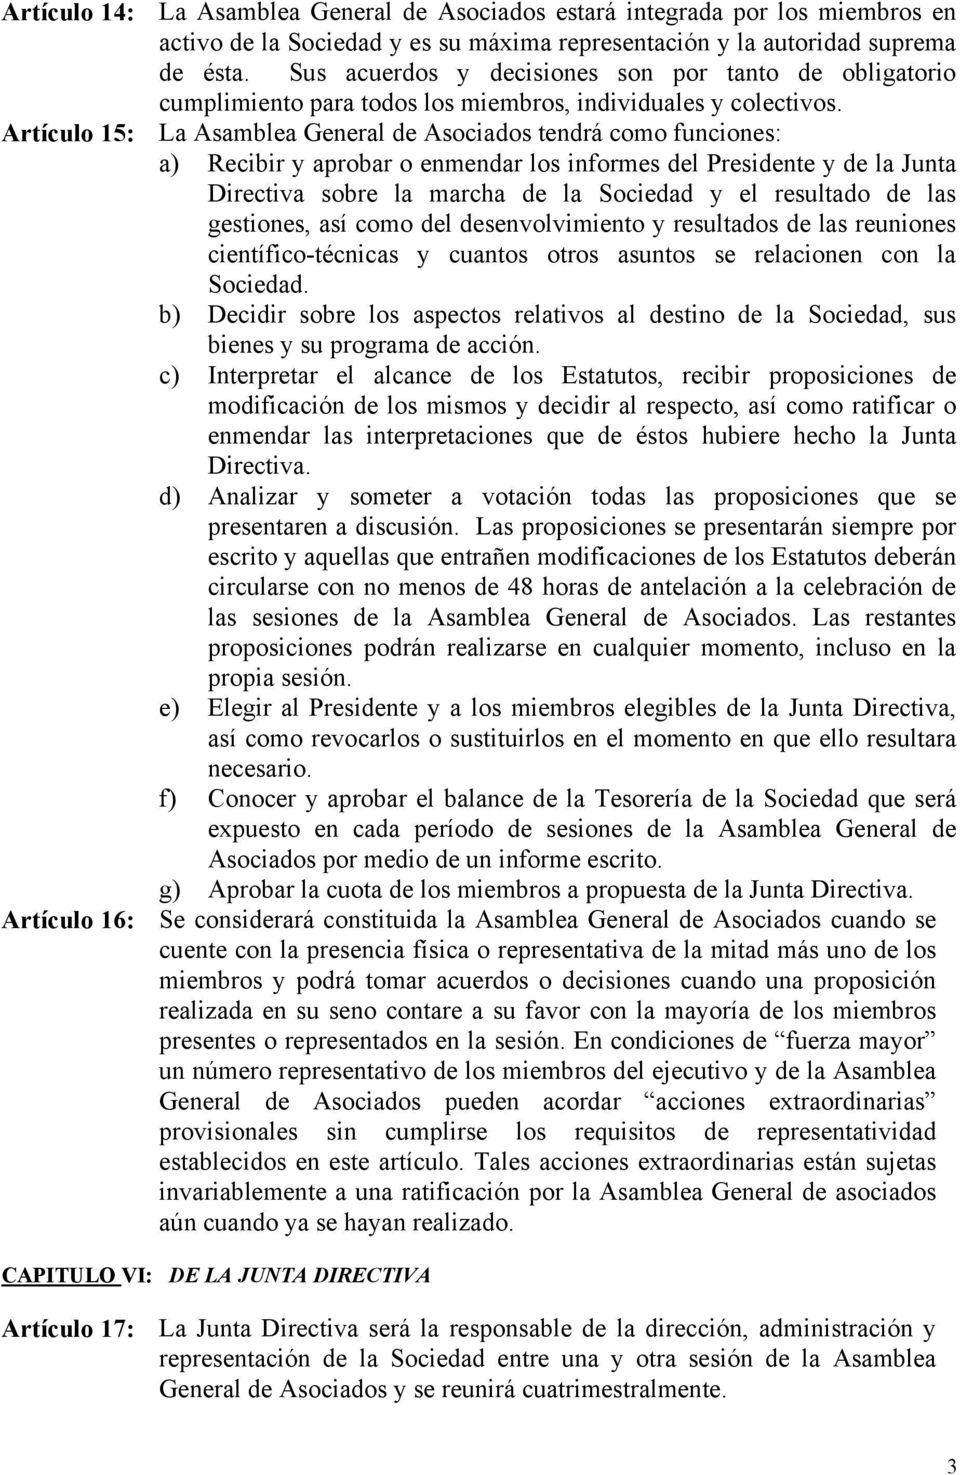 Artículo 15: La Asamblea General de Asociados tendrá como funciones: a) Recibir y aprobar o enmendar los informes del Presidente y de la Junta Directiva sobre la marcha de la Sociedad y el resultado